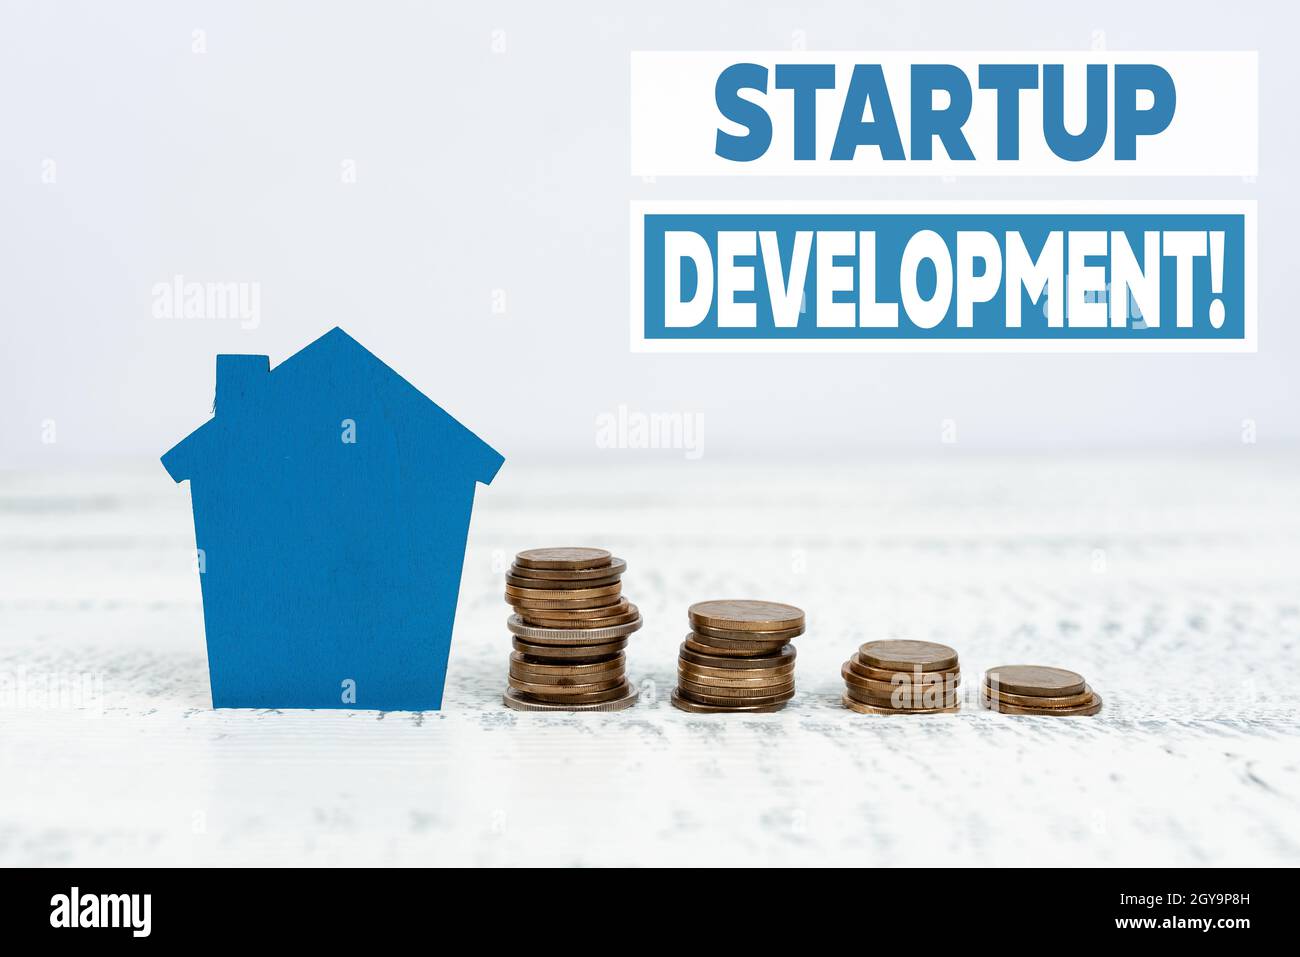 Text zeigt Inspiration Startup Development, Business Idea effizientes entwickeln und validieren skalierbares Geschäftsmodell Grundbesitz verkaufen, investieren Stockfoto